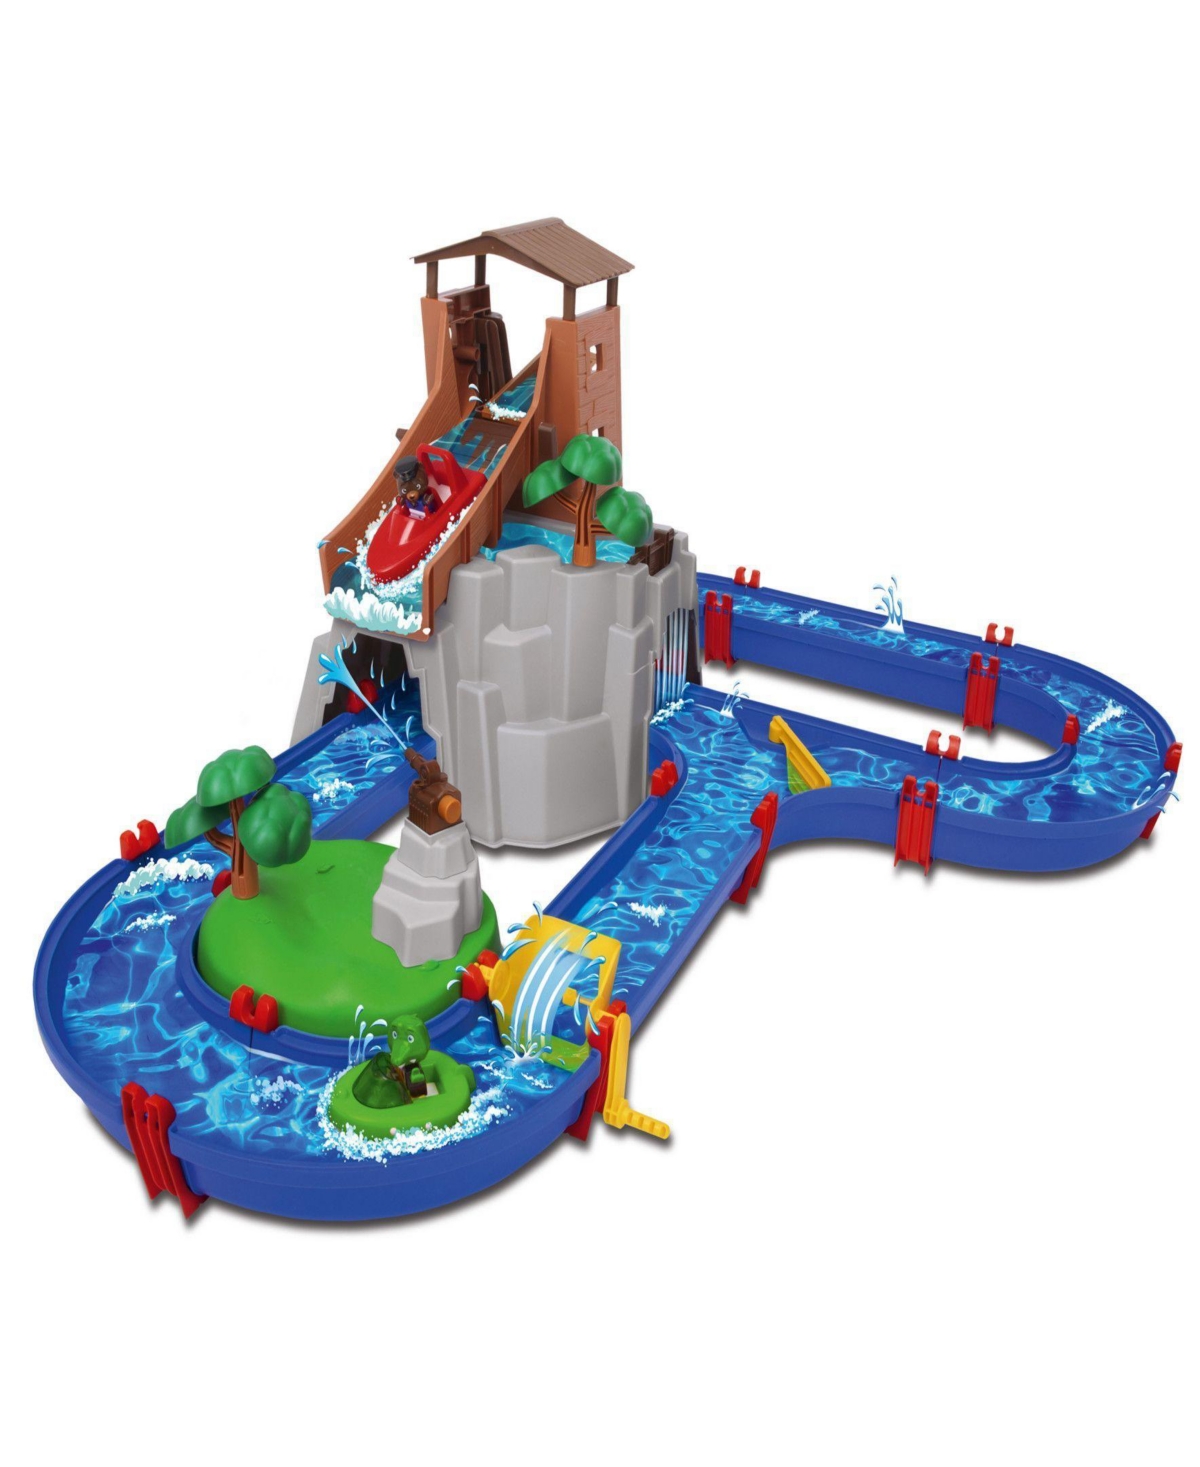 Aquaplay - Adventureland Playset In Multi